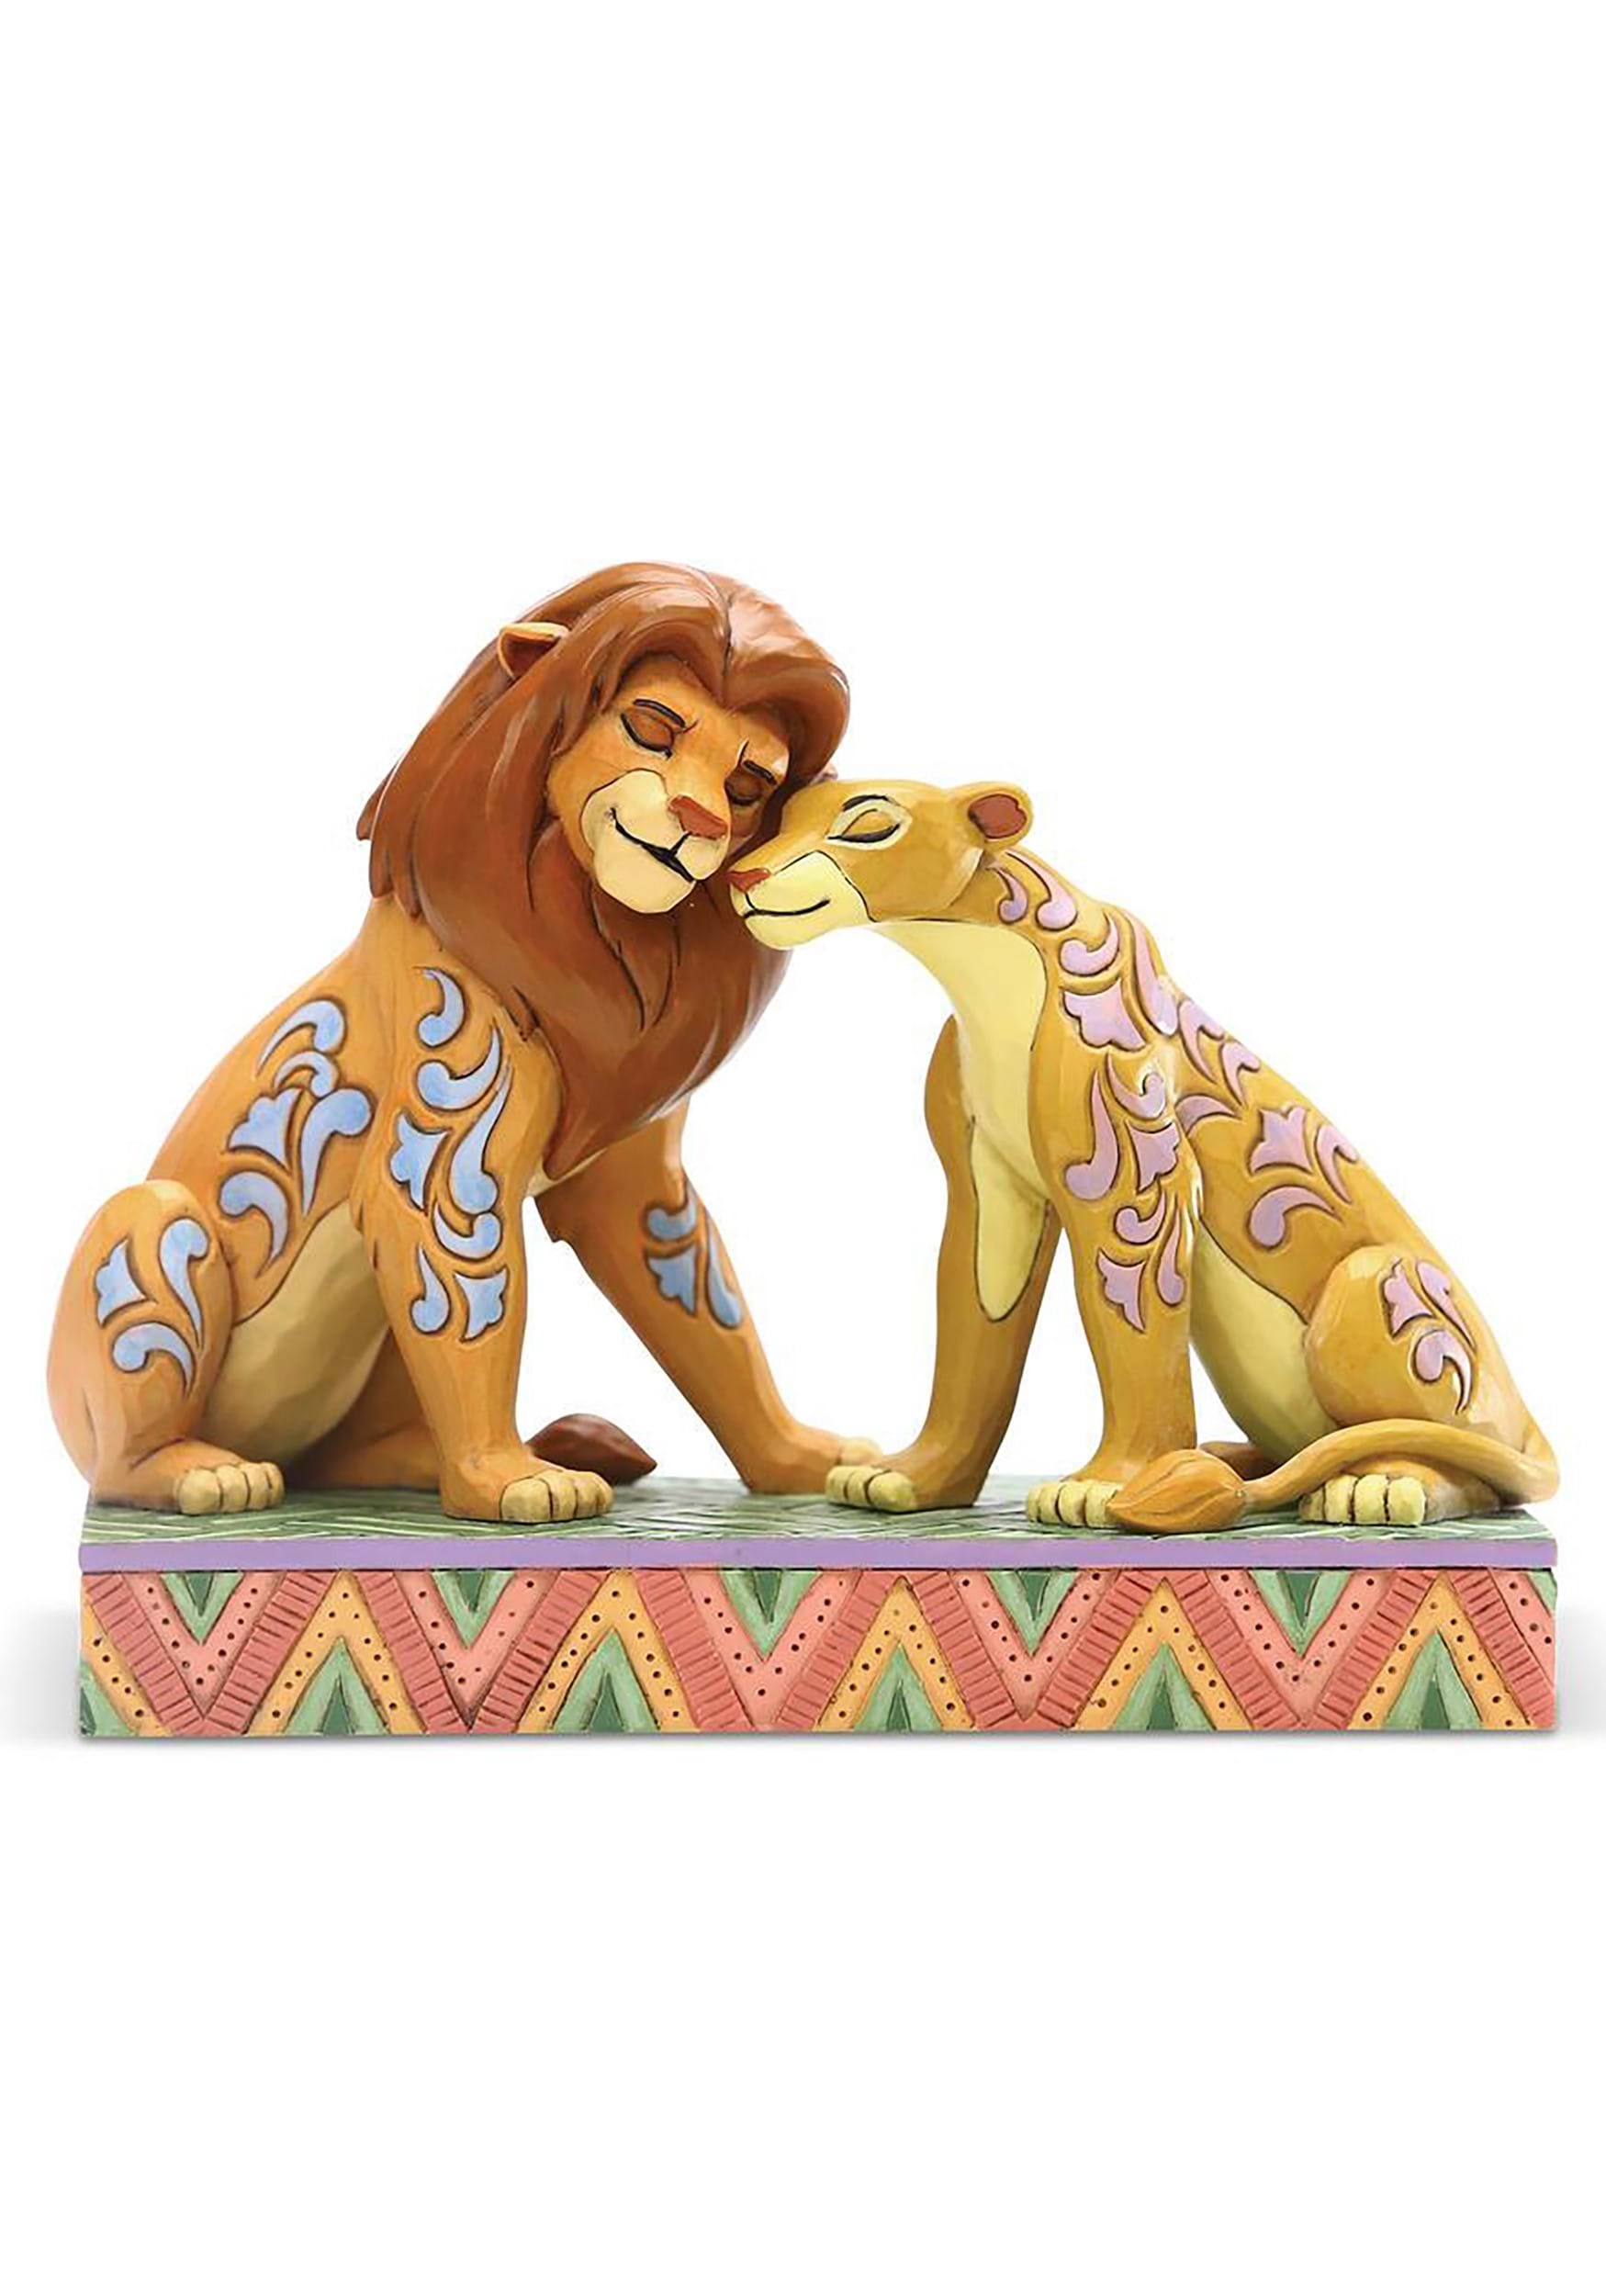 Lion King Simba and Nala Snuggling Figure